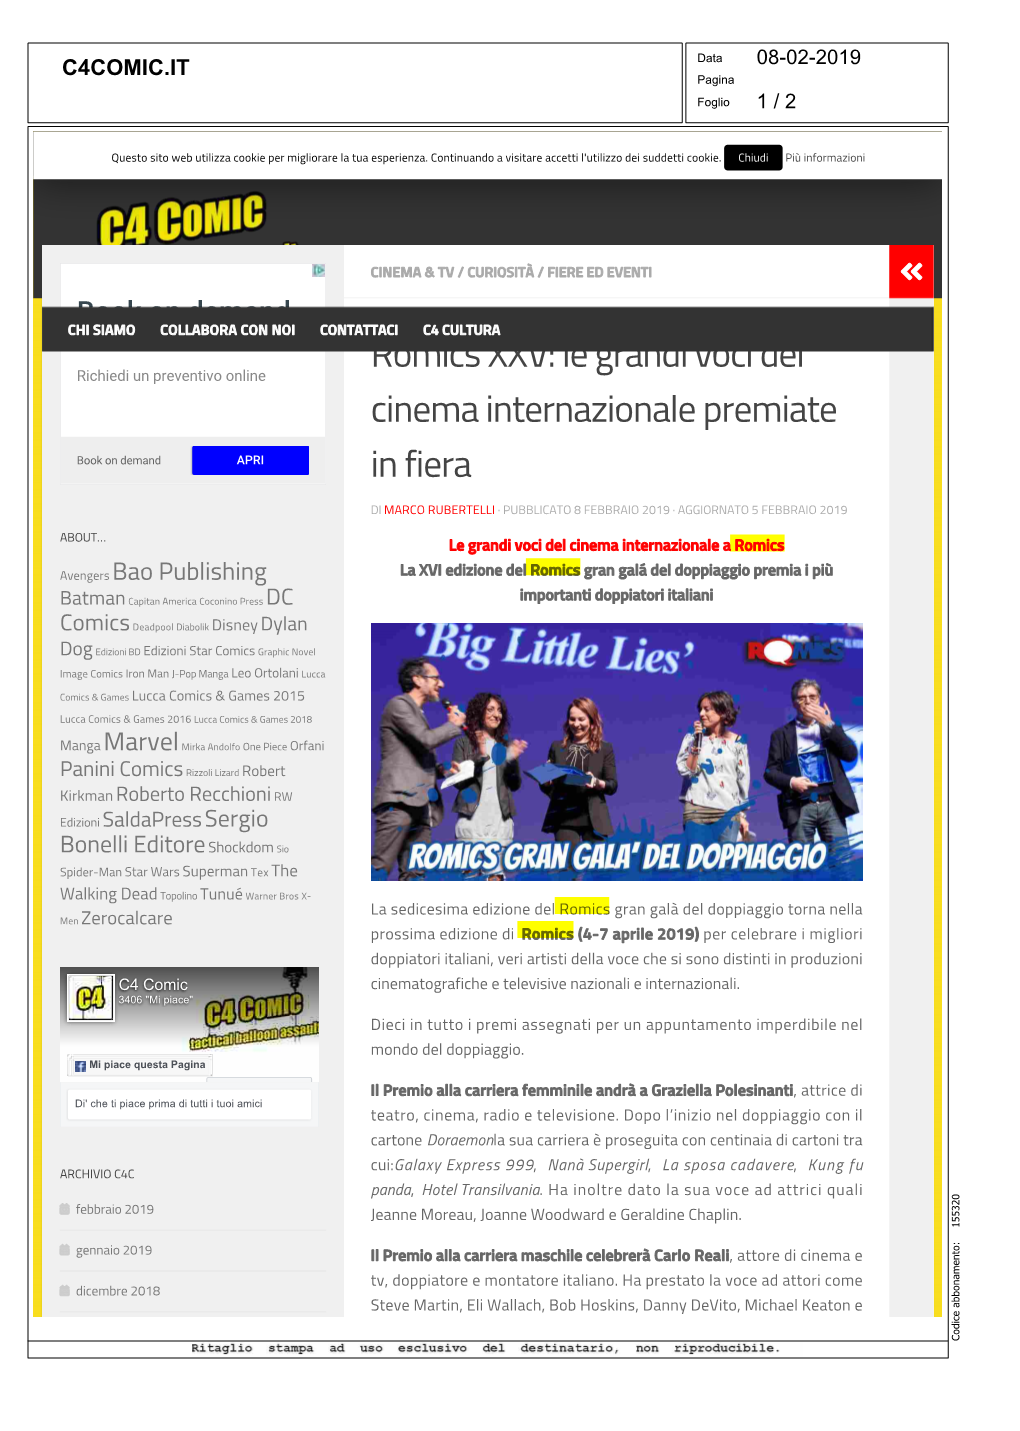 Romics XXV: Le Grandi Voci Del Cinema Internazionale Premiate in Fiera